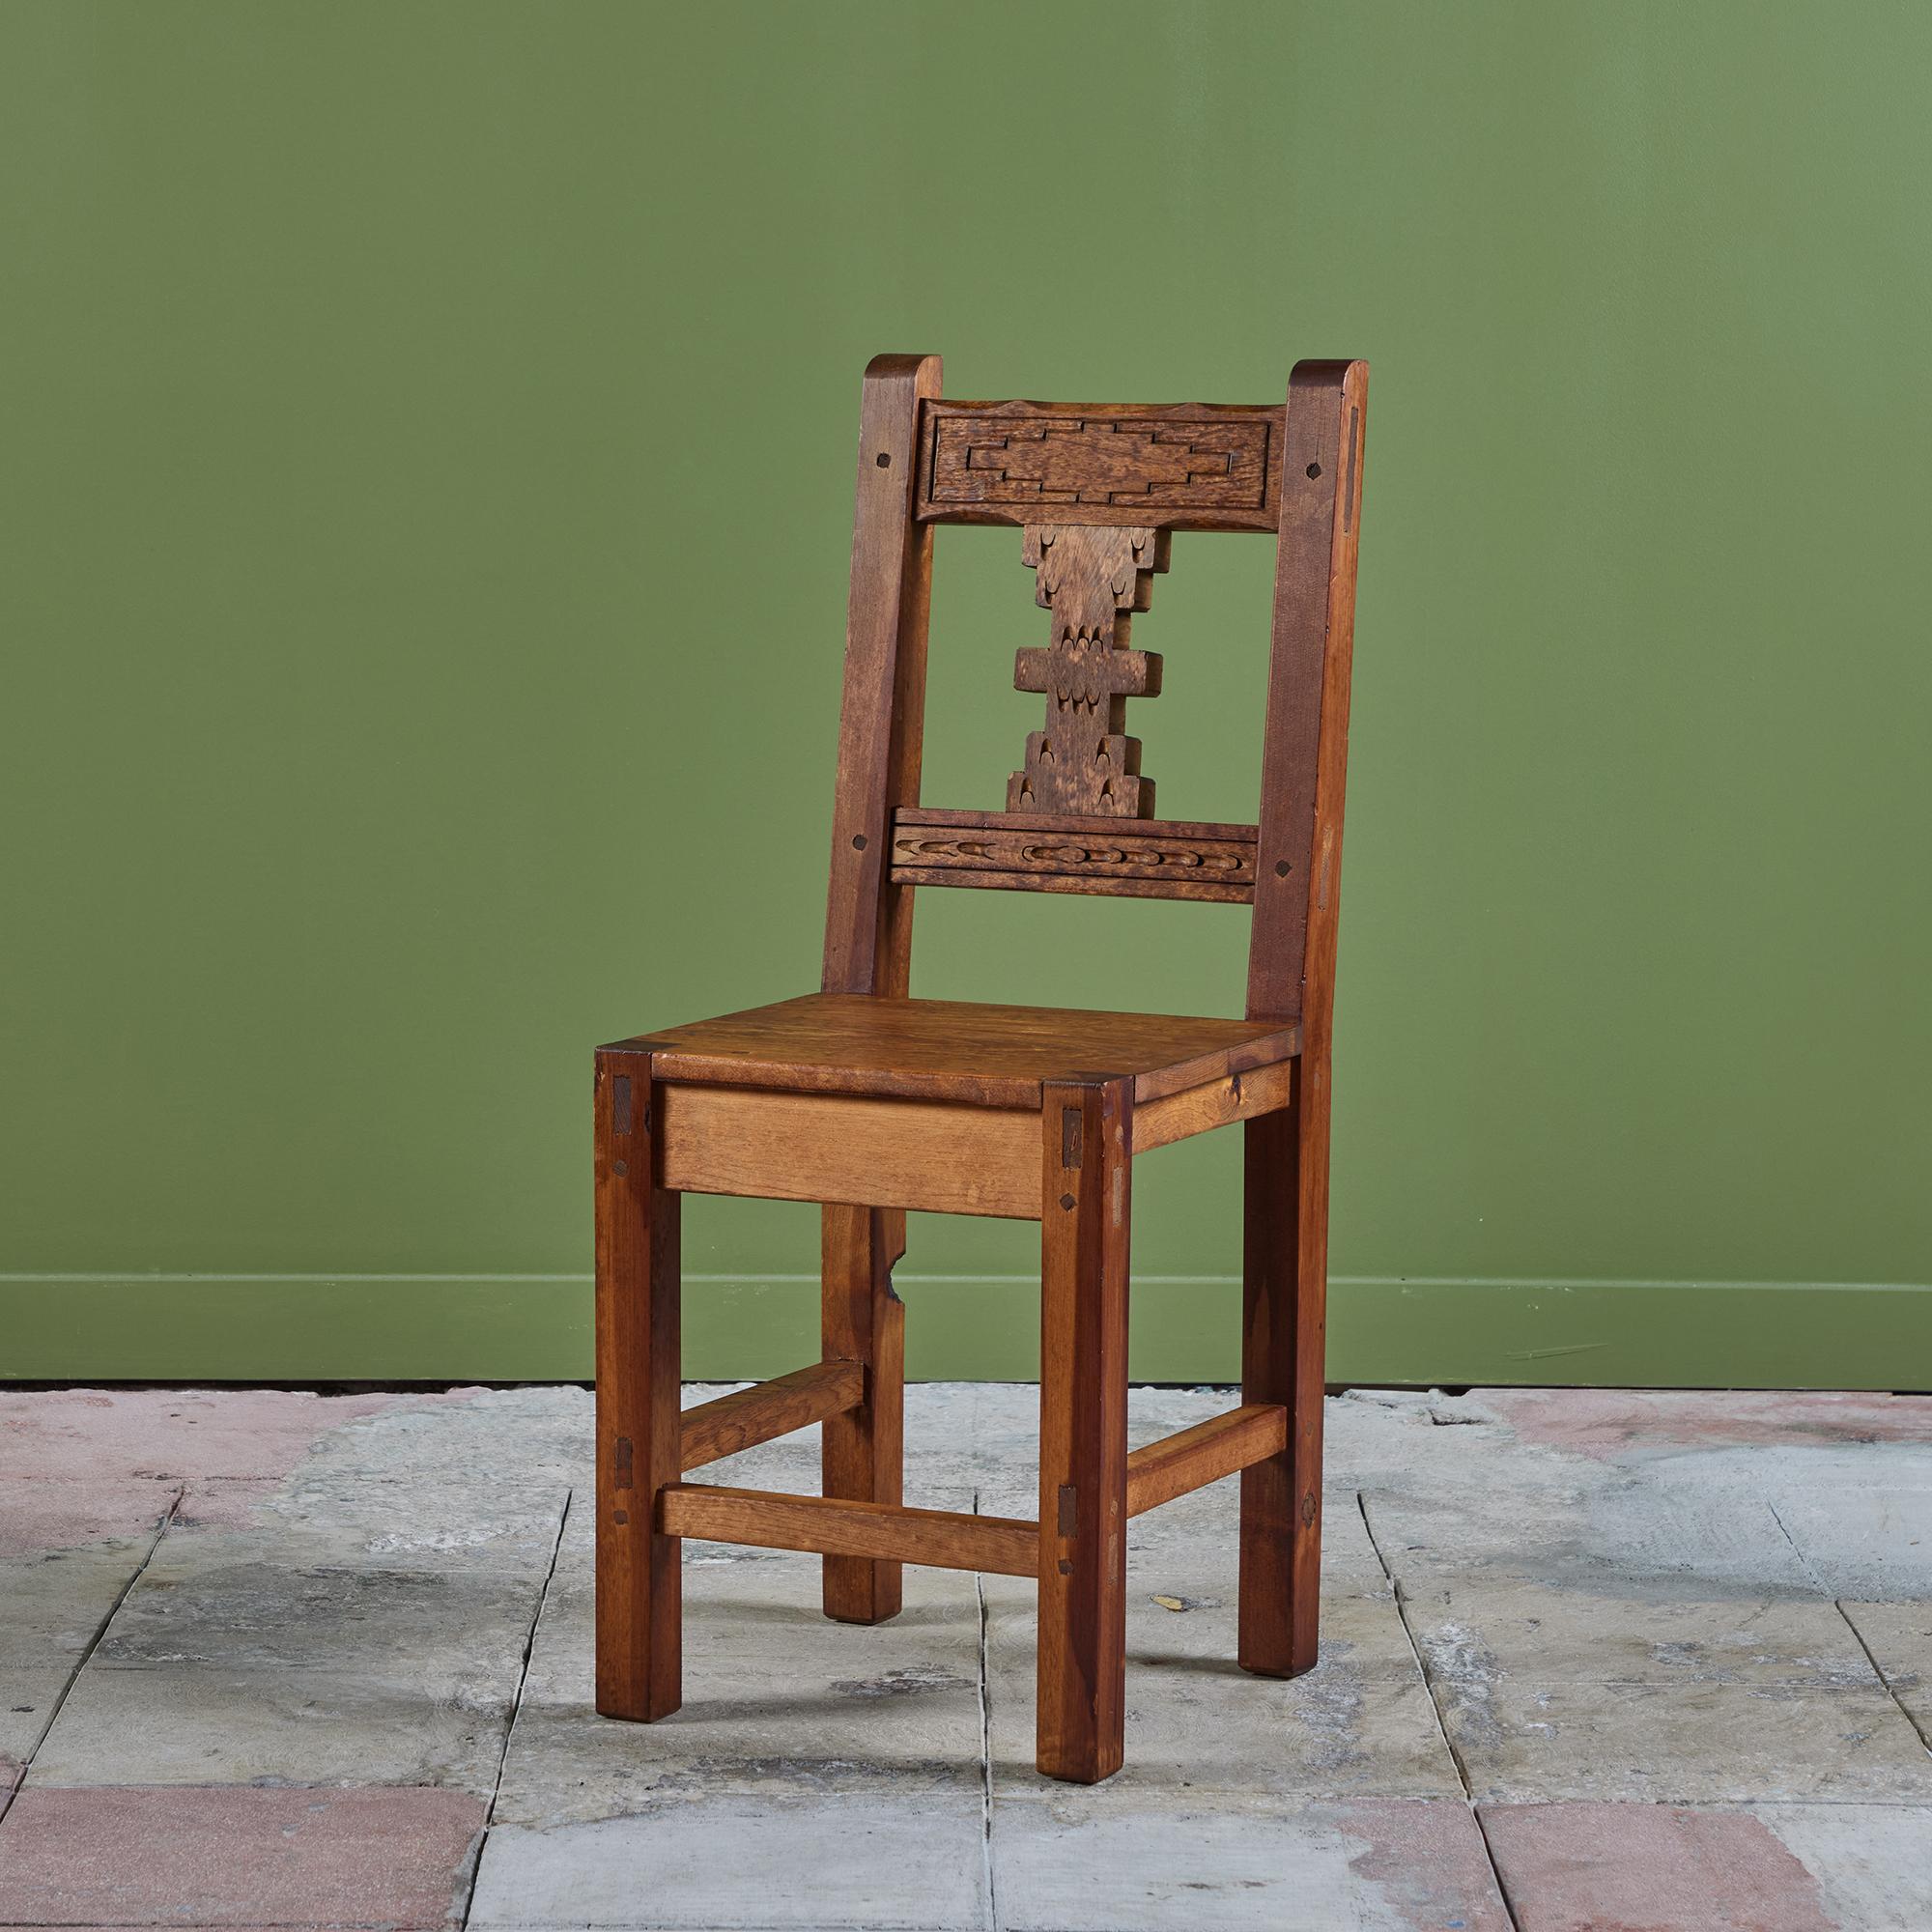 Chaise d'appoint moderne mexicaine sculptée à la main. La chaise présente un cadre en acajou avec un détail sculpté le long de l'avant du dossier. Parfait comme chaise d'appoint, chaise de bureau ou ensemble de chaises de salle à manger ! Nous en